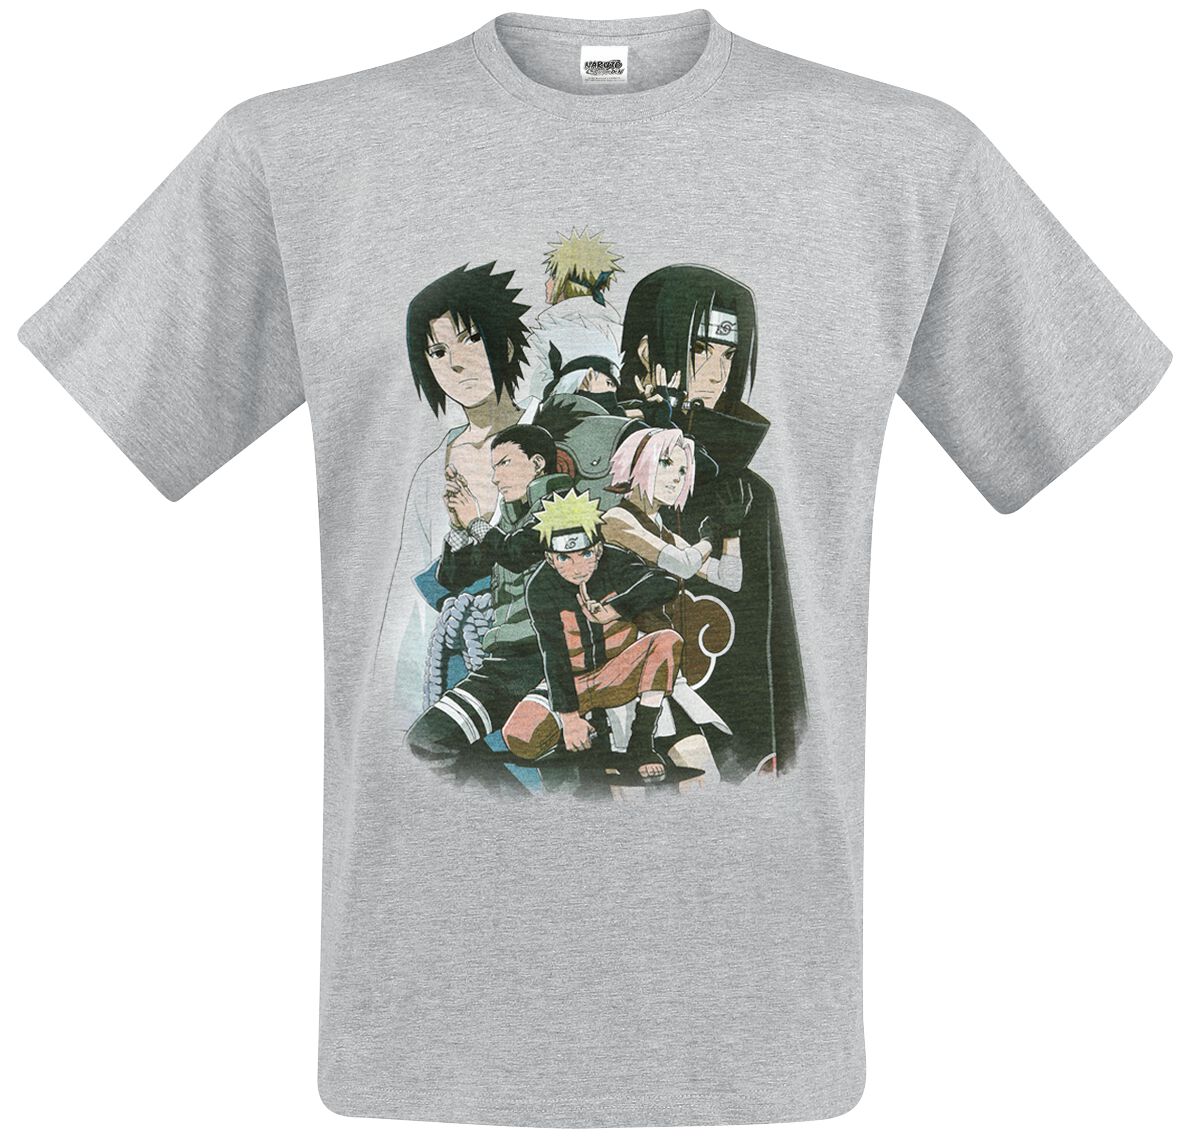 Naruto Shippuden - Group T-Shirt grau meliert in XL